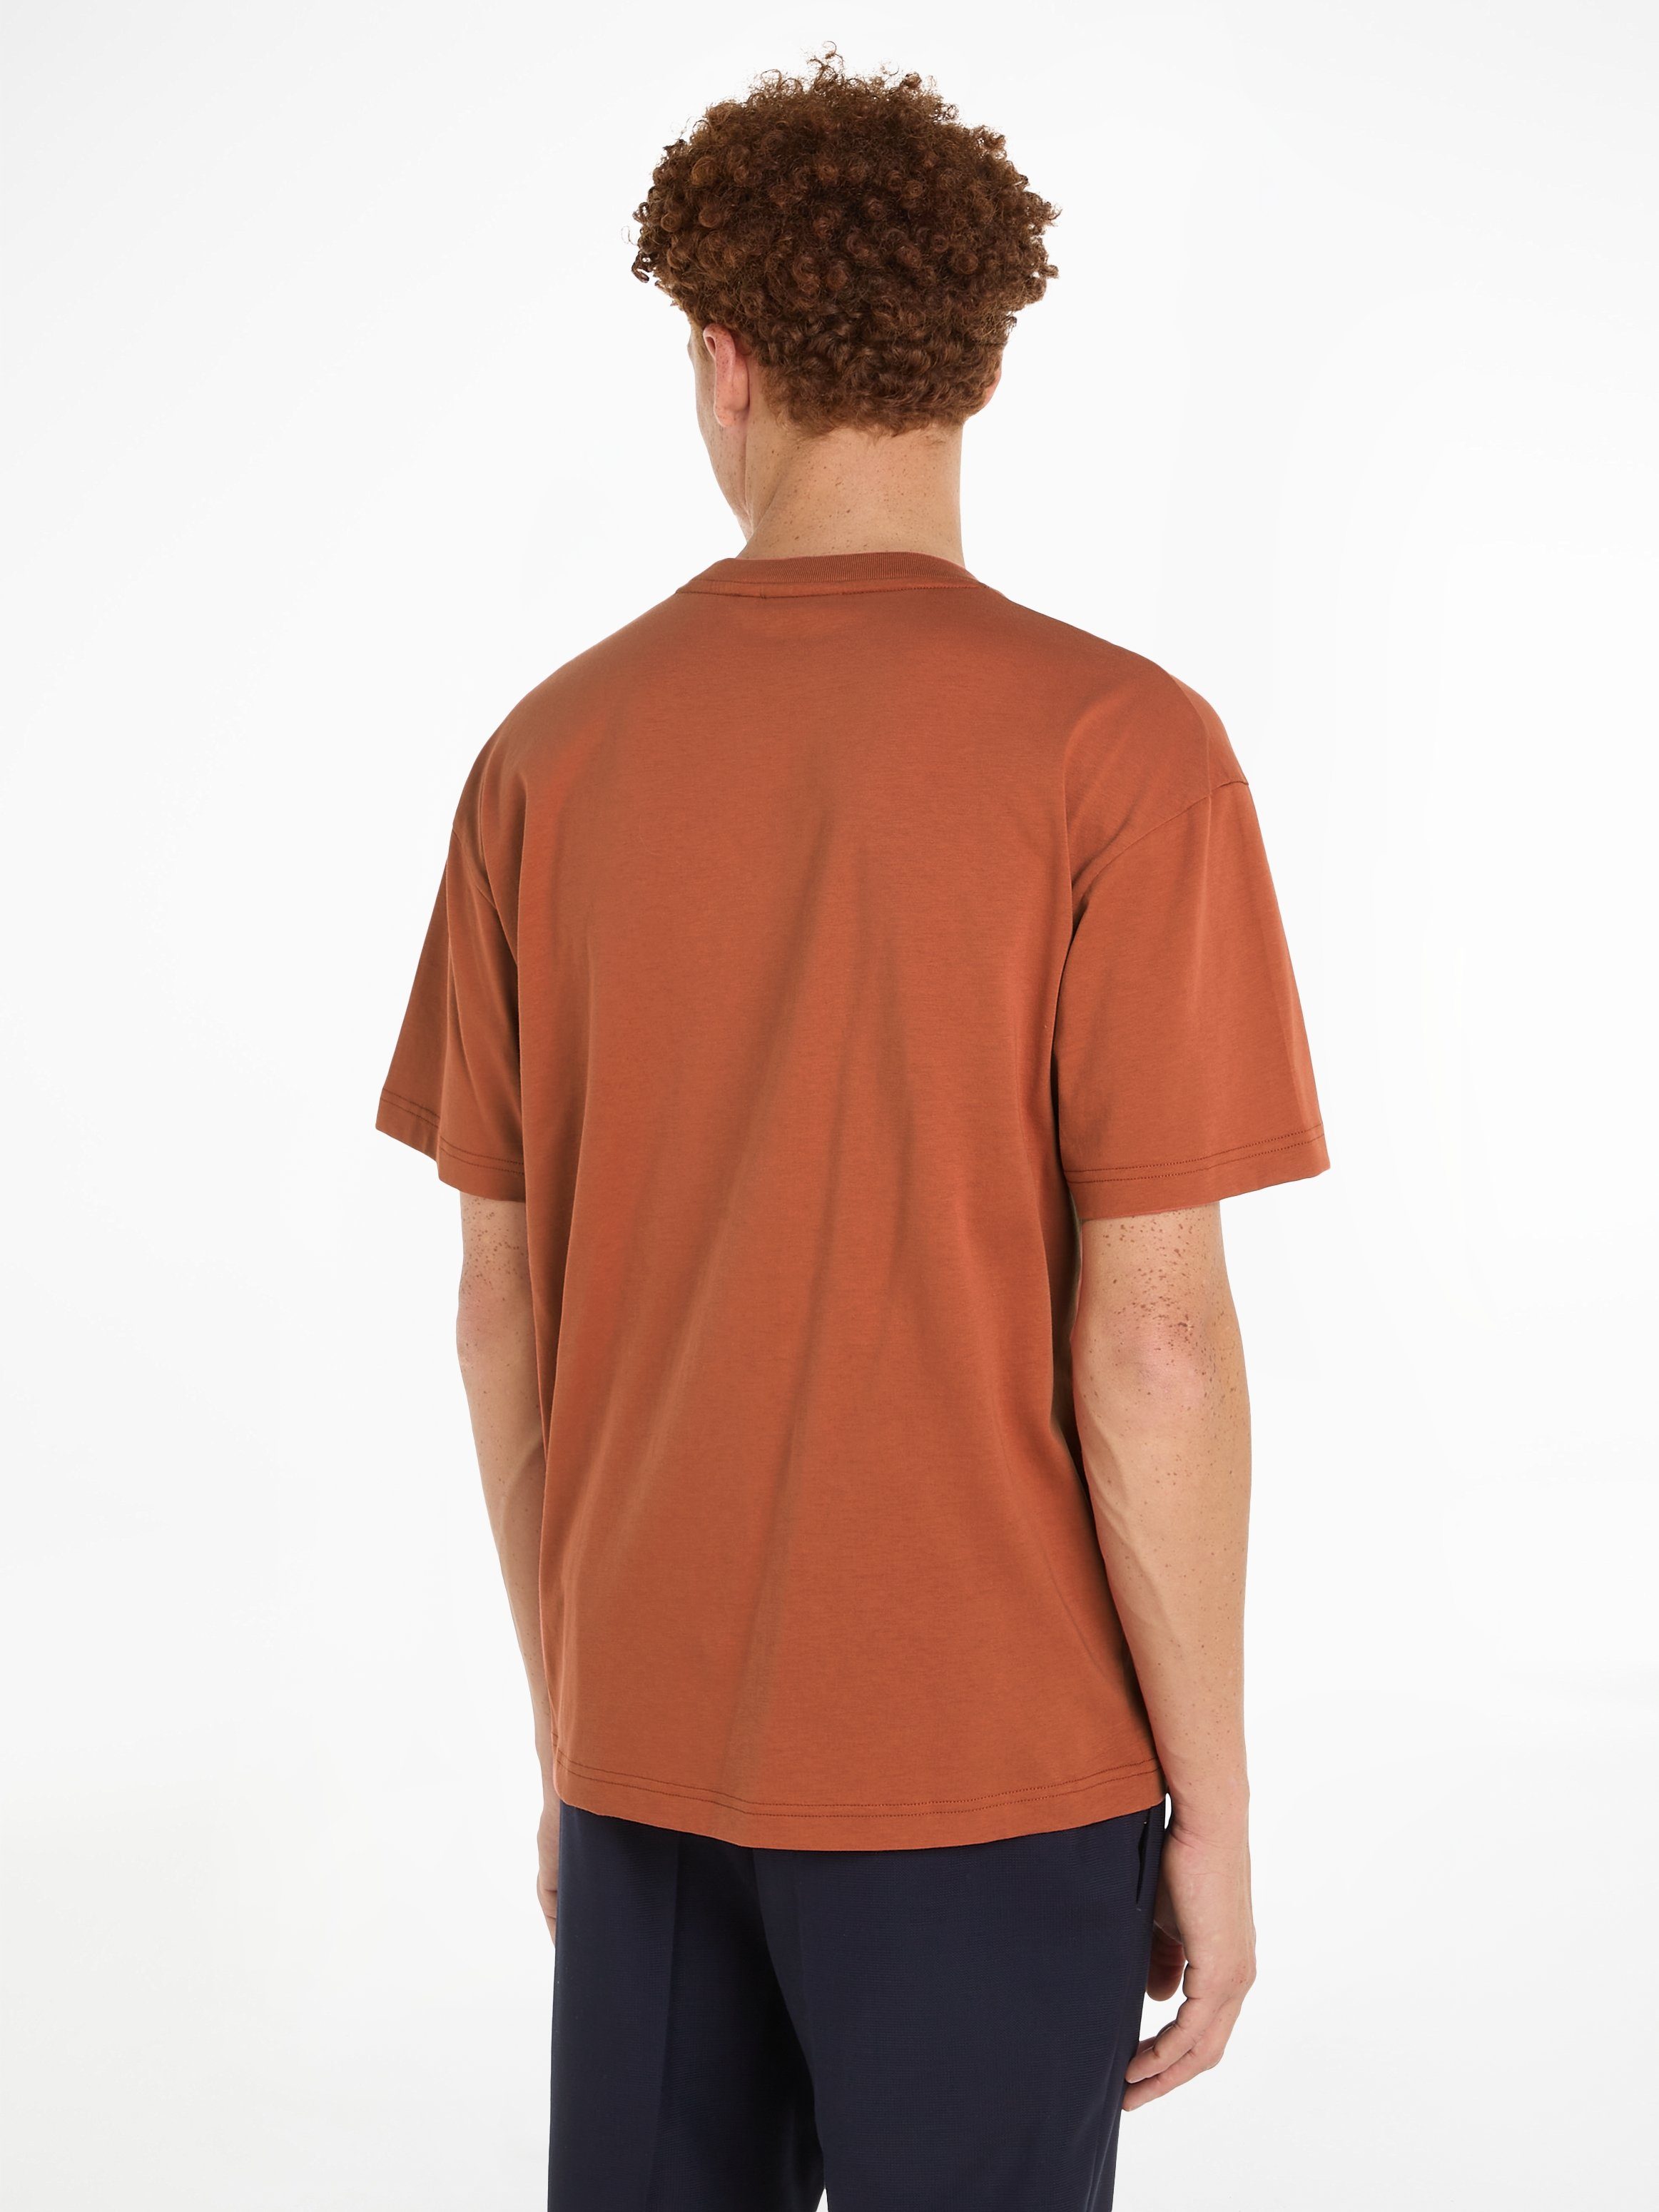 Calvin Klein T-Shirt T-SHIRT LOGO Copper COMFORT Markenlabel HERO aufgedrucktem mit Sun